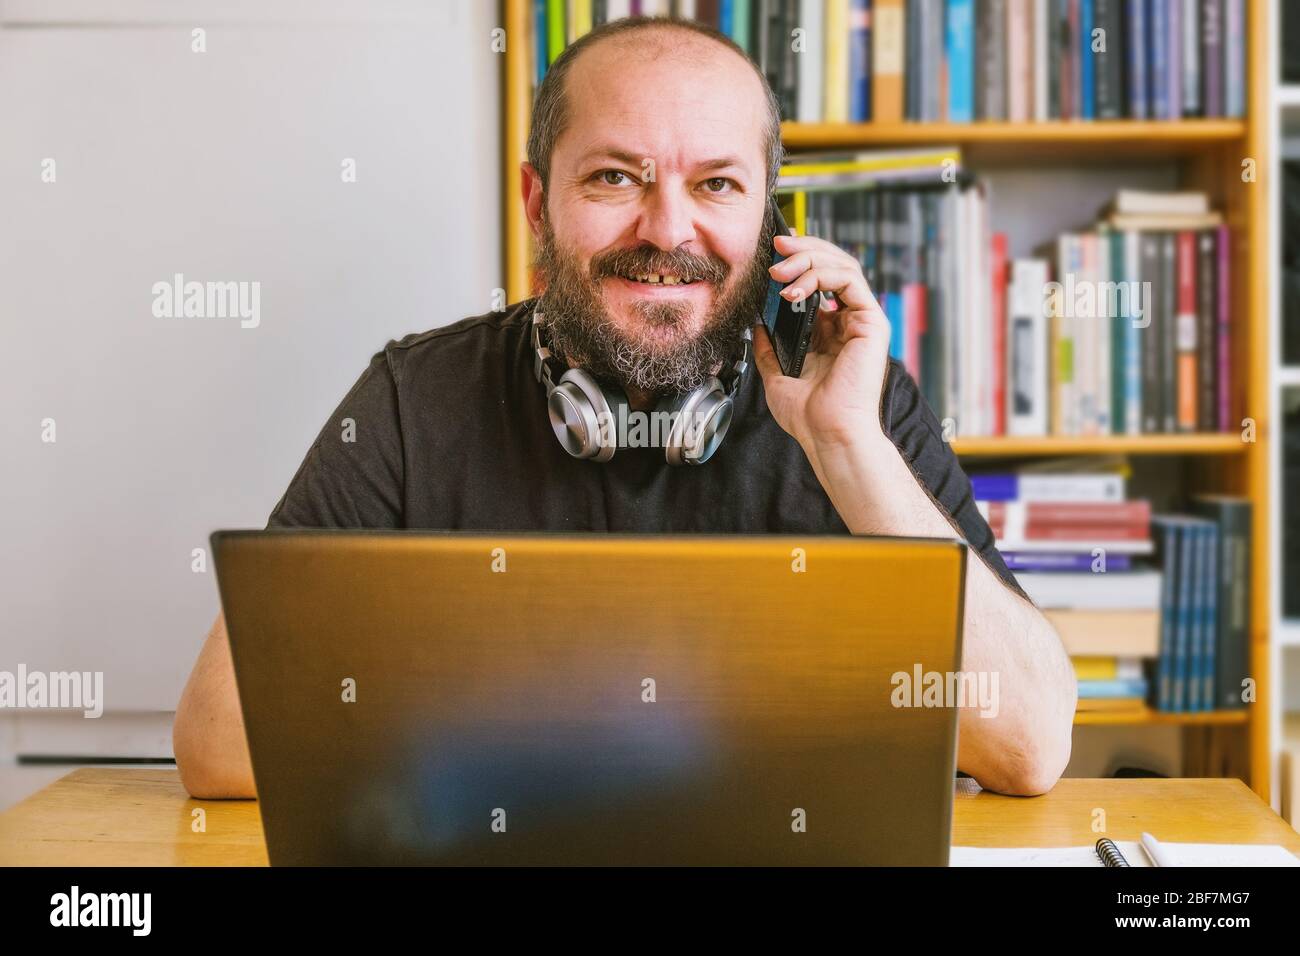 Home Office-Konzept. Erwachsene bärtigen Mann konzentriert, arbeitet online von zu Hause aus auf Computer-Laptop, Bücherregale hinter ihm Stockfoto